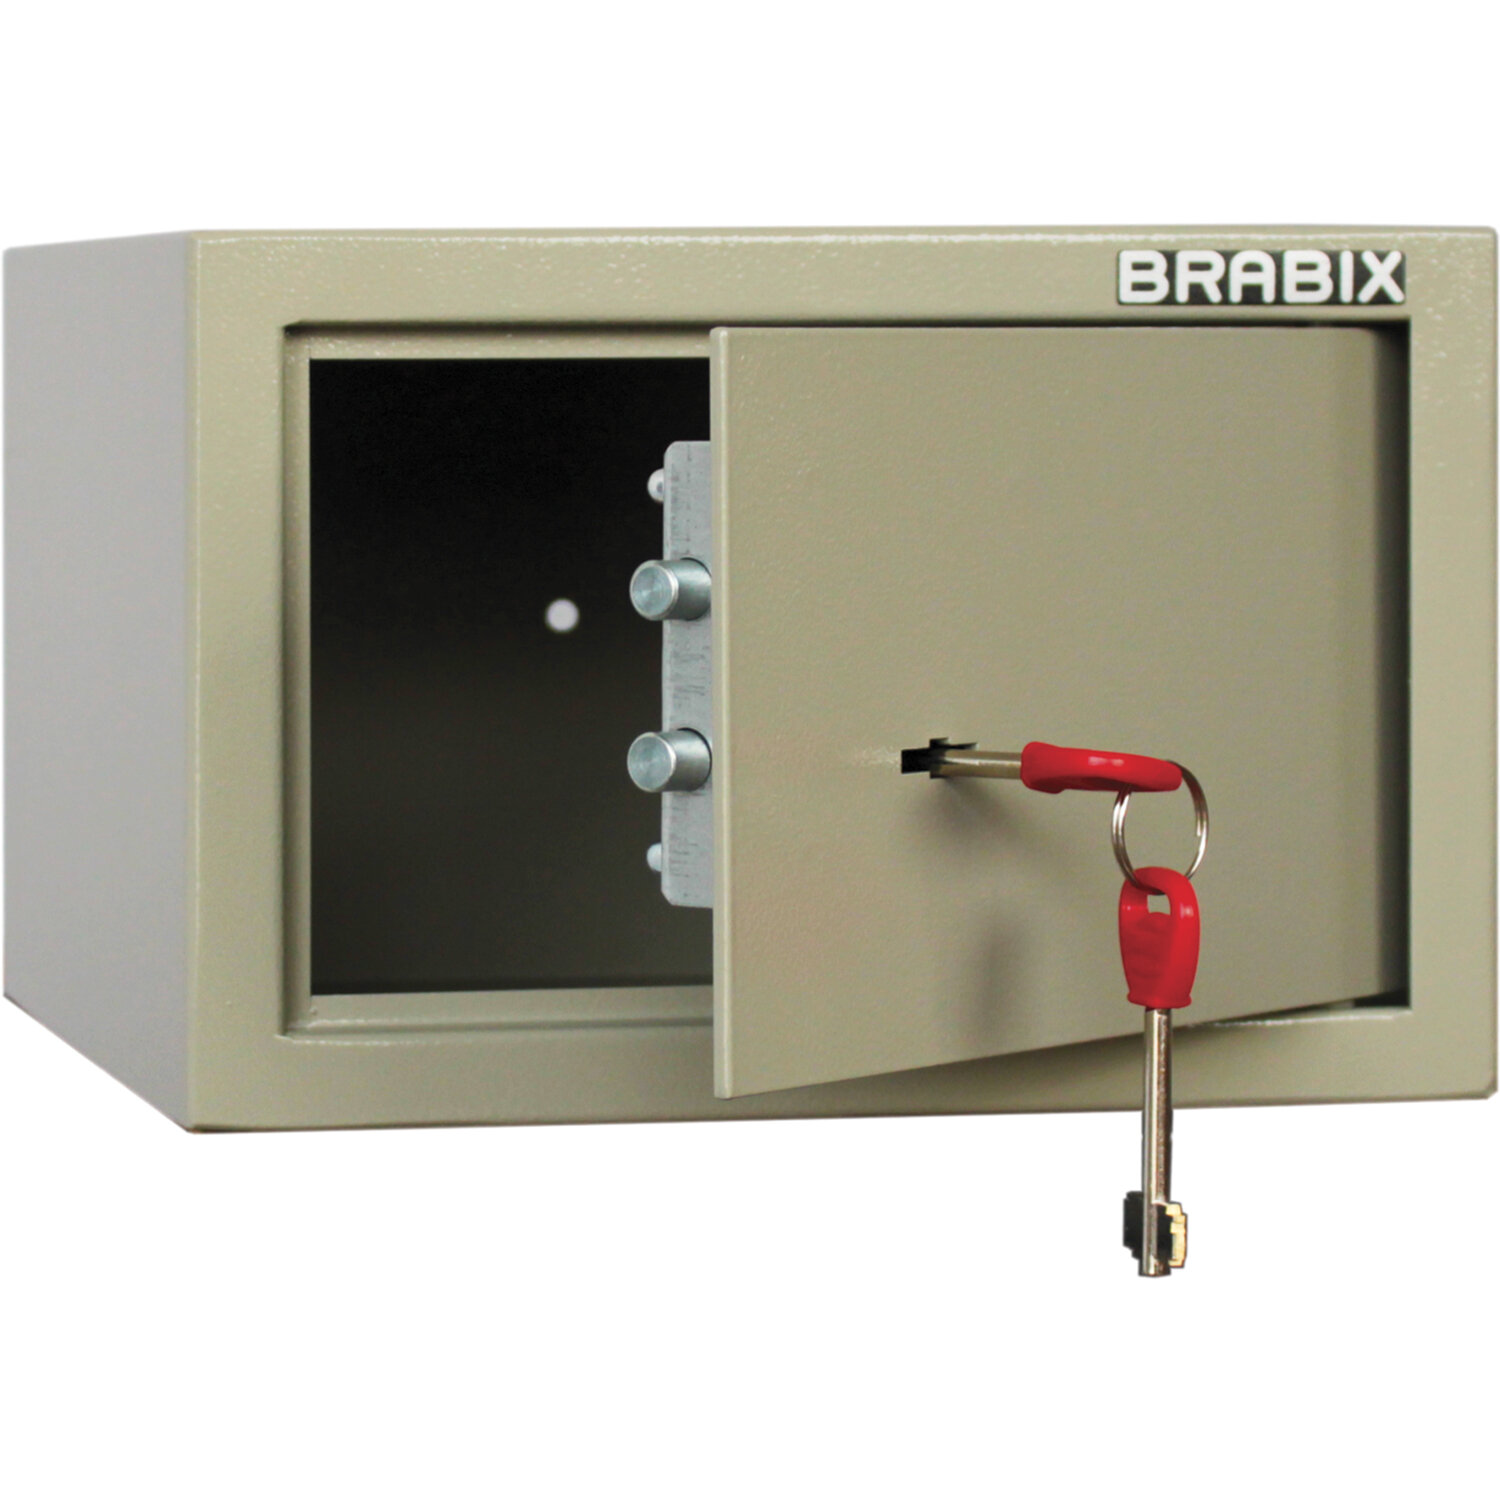 Brabix Сейф мебельный BRABIX D-18m, 180х270х236 мм, 5 кг, ключевой замок, крепление к стене, 291161